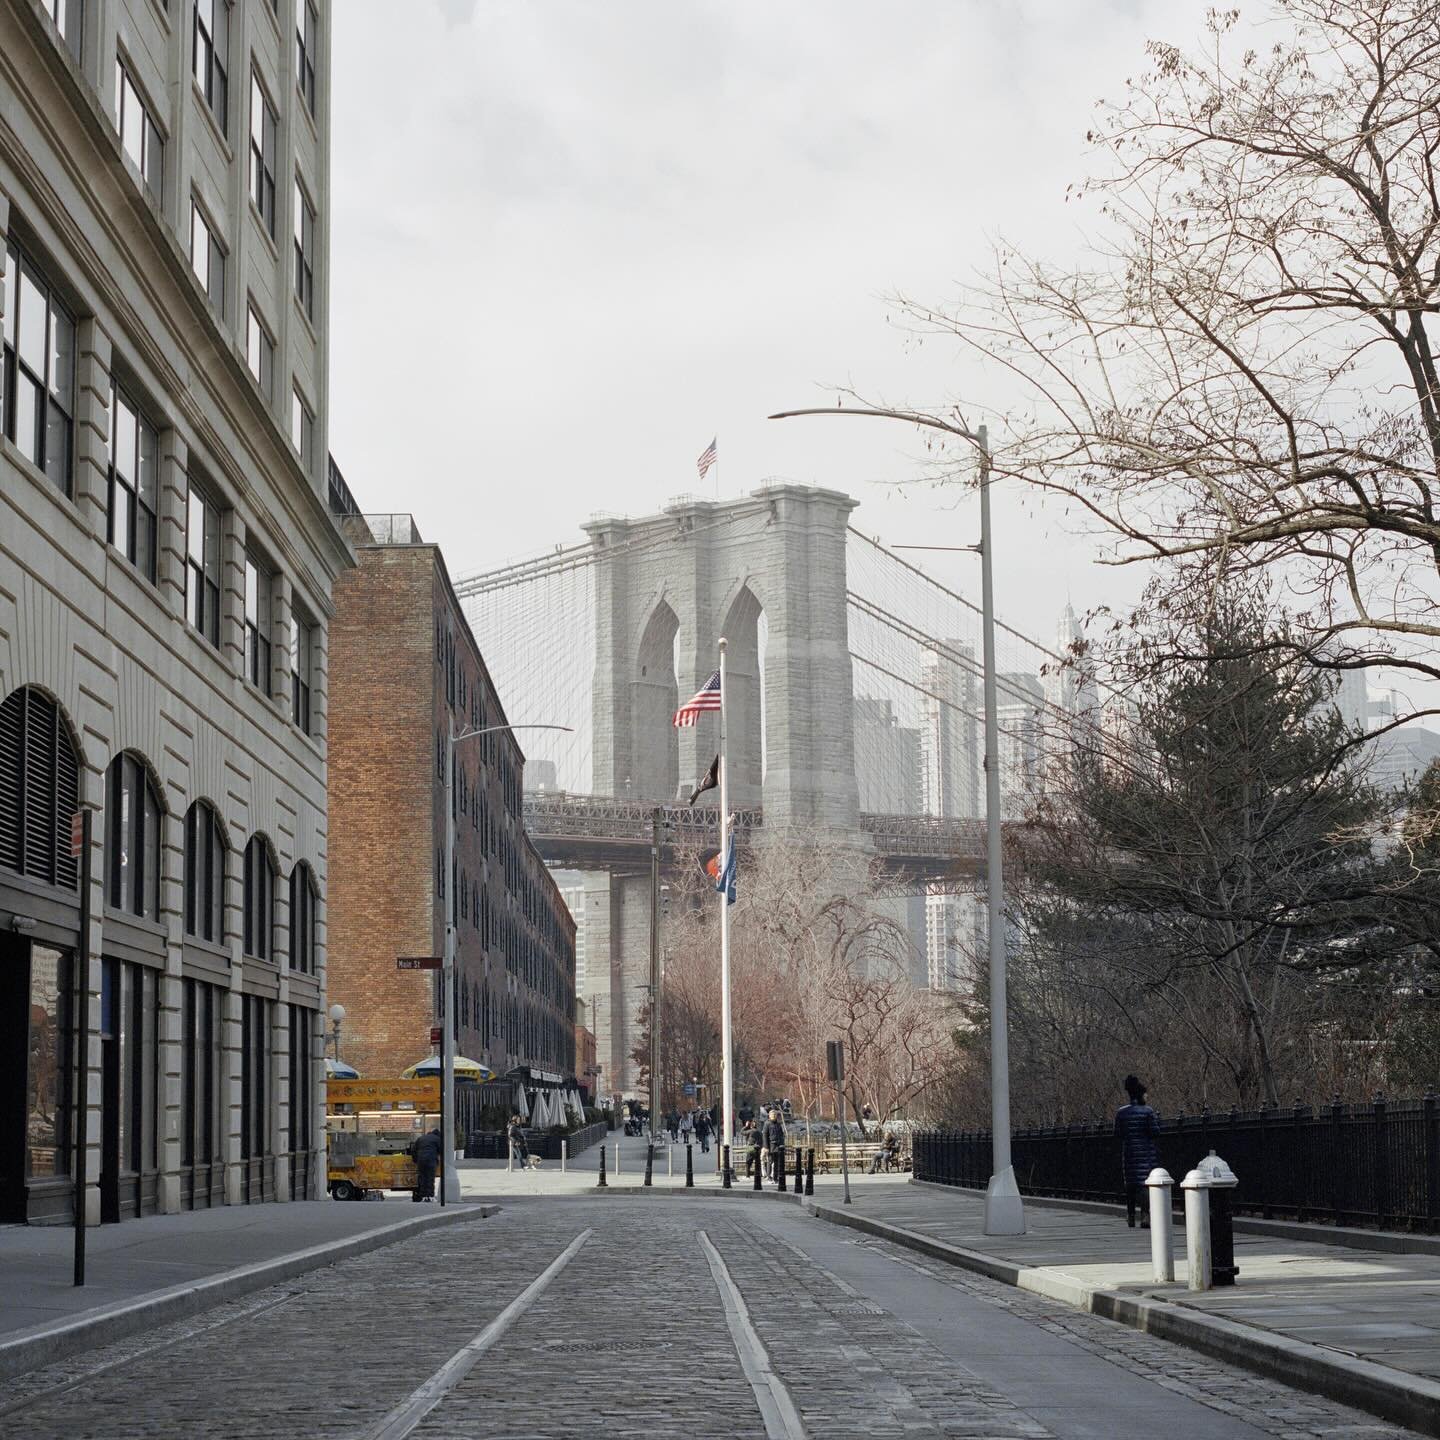 ✨ DUMBO (Down Under Manhattan Bridge Overpass) para la @revista_aire, en donde este mes pueden leer nuestro feature neoyorquino: La Ciudad Infinita 🌃 

➖ Hasselblad 500CM